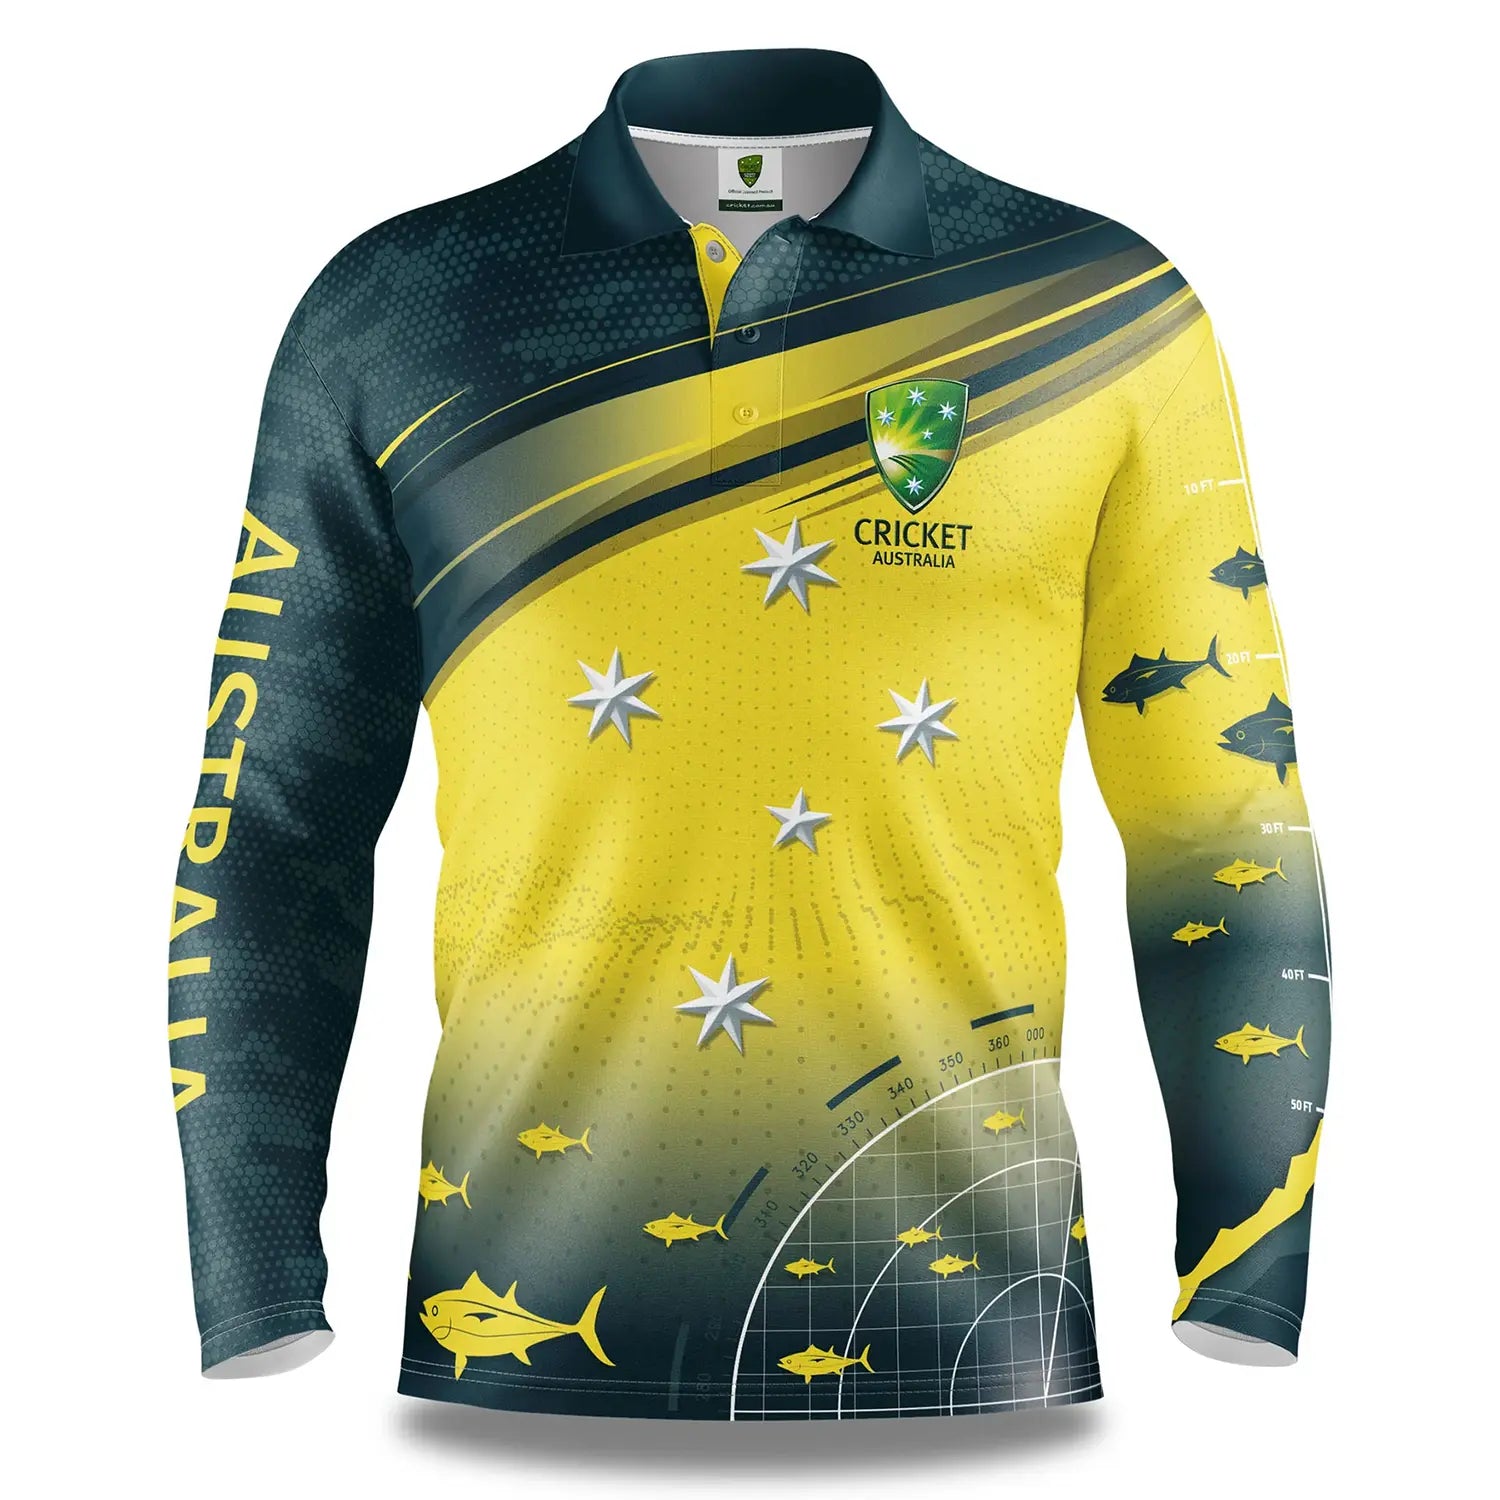 T20 World cup 2022: ऑस्ट्रेलिया क्रिकेट टीम की जर्सी लॉन्च, इस बार स्वदेशी  है थीम - t20 world cup 2022 cricket australia unveils indigenous themed new  jersey for t20 wc – News18 हिंदी